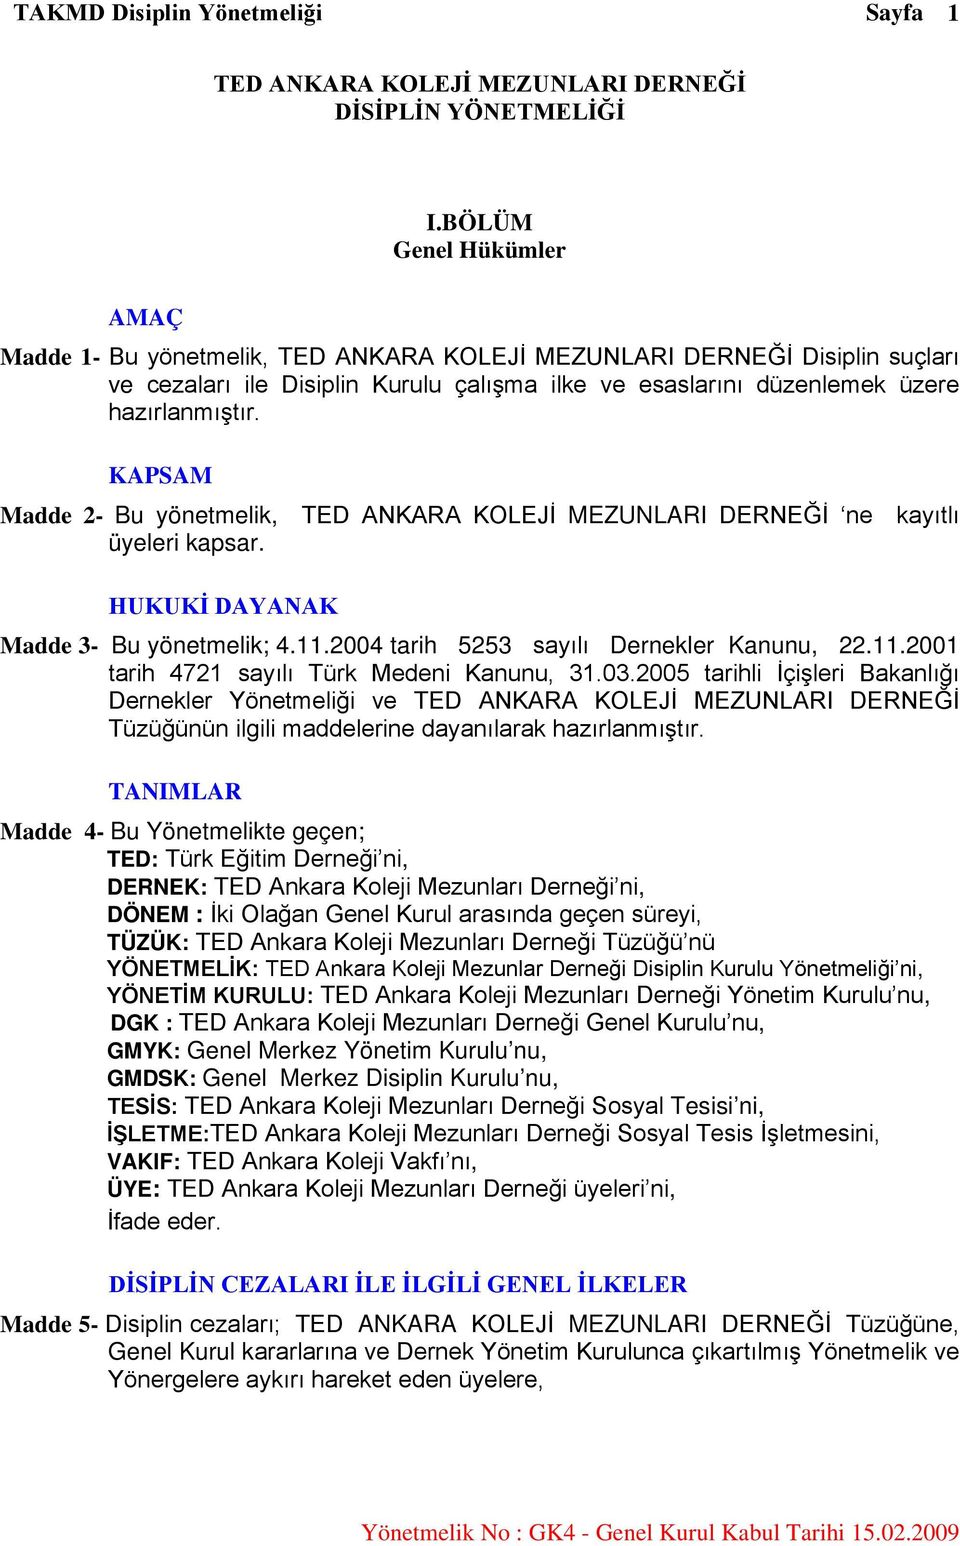 KAPSAM Madde 2- Bu yönetmelik, TED ANKARA KOLEJİ MEZUNLARI DERNEĞİ ne kayıtlı üyeleri kapsar. HUKUKİ DAYANAK Madde 3- Bu yönetmelik; 4.11.2004 tarih 5253 sayılı Dernekler Kanunu, 22.11.2001 tarih 4721 sayılı Türk Medeni Kanunu, 31.